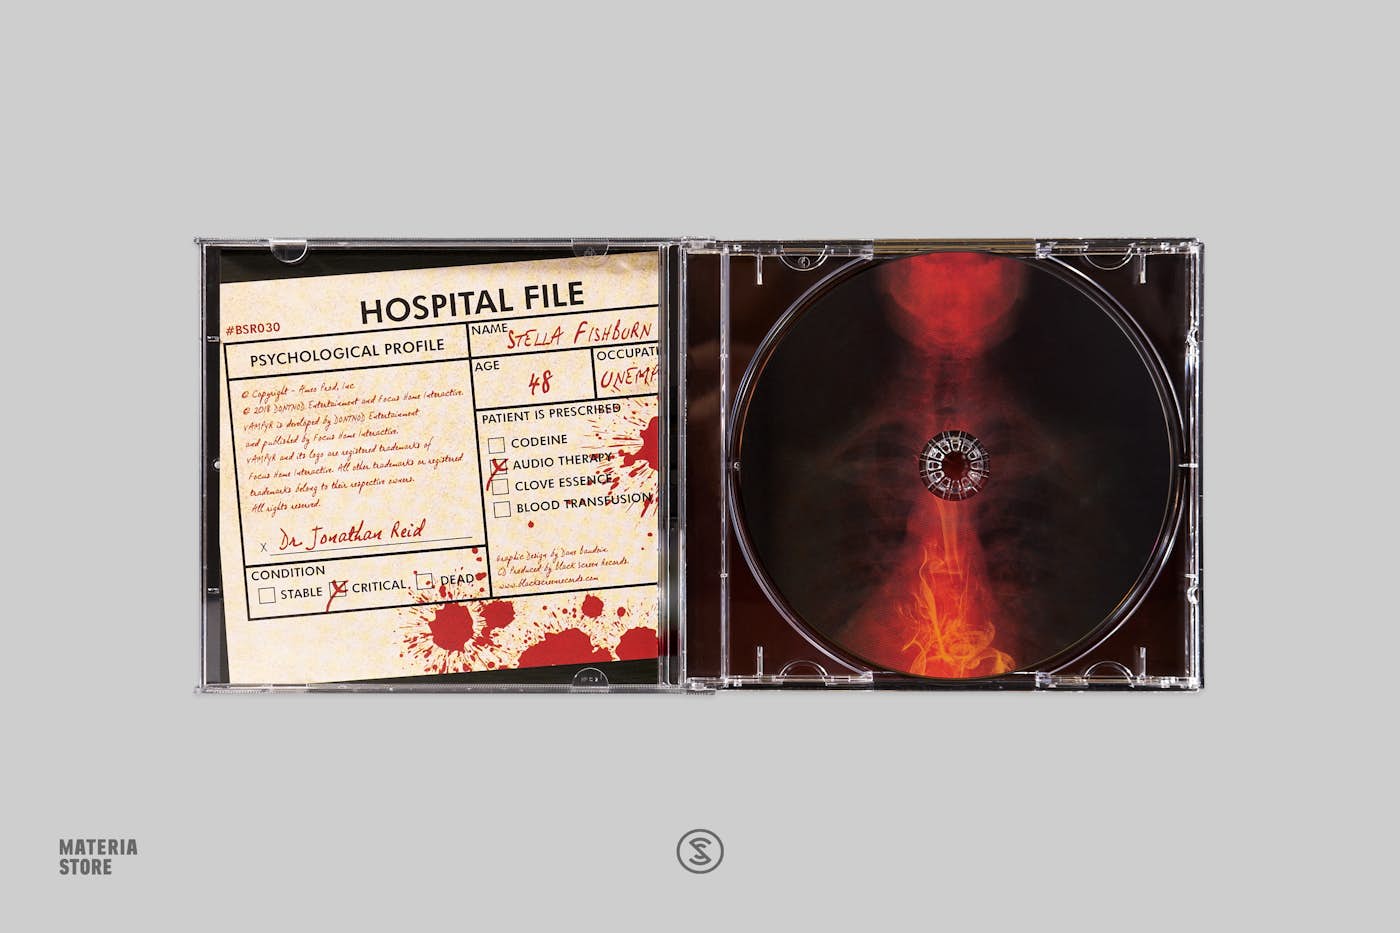 A Plague Tale: Requiem (Original Soundtrack) - Album by Olivier Deriviere